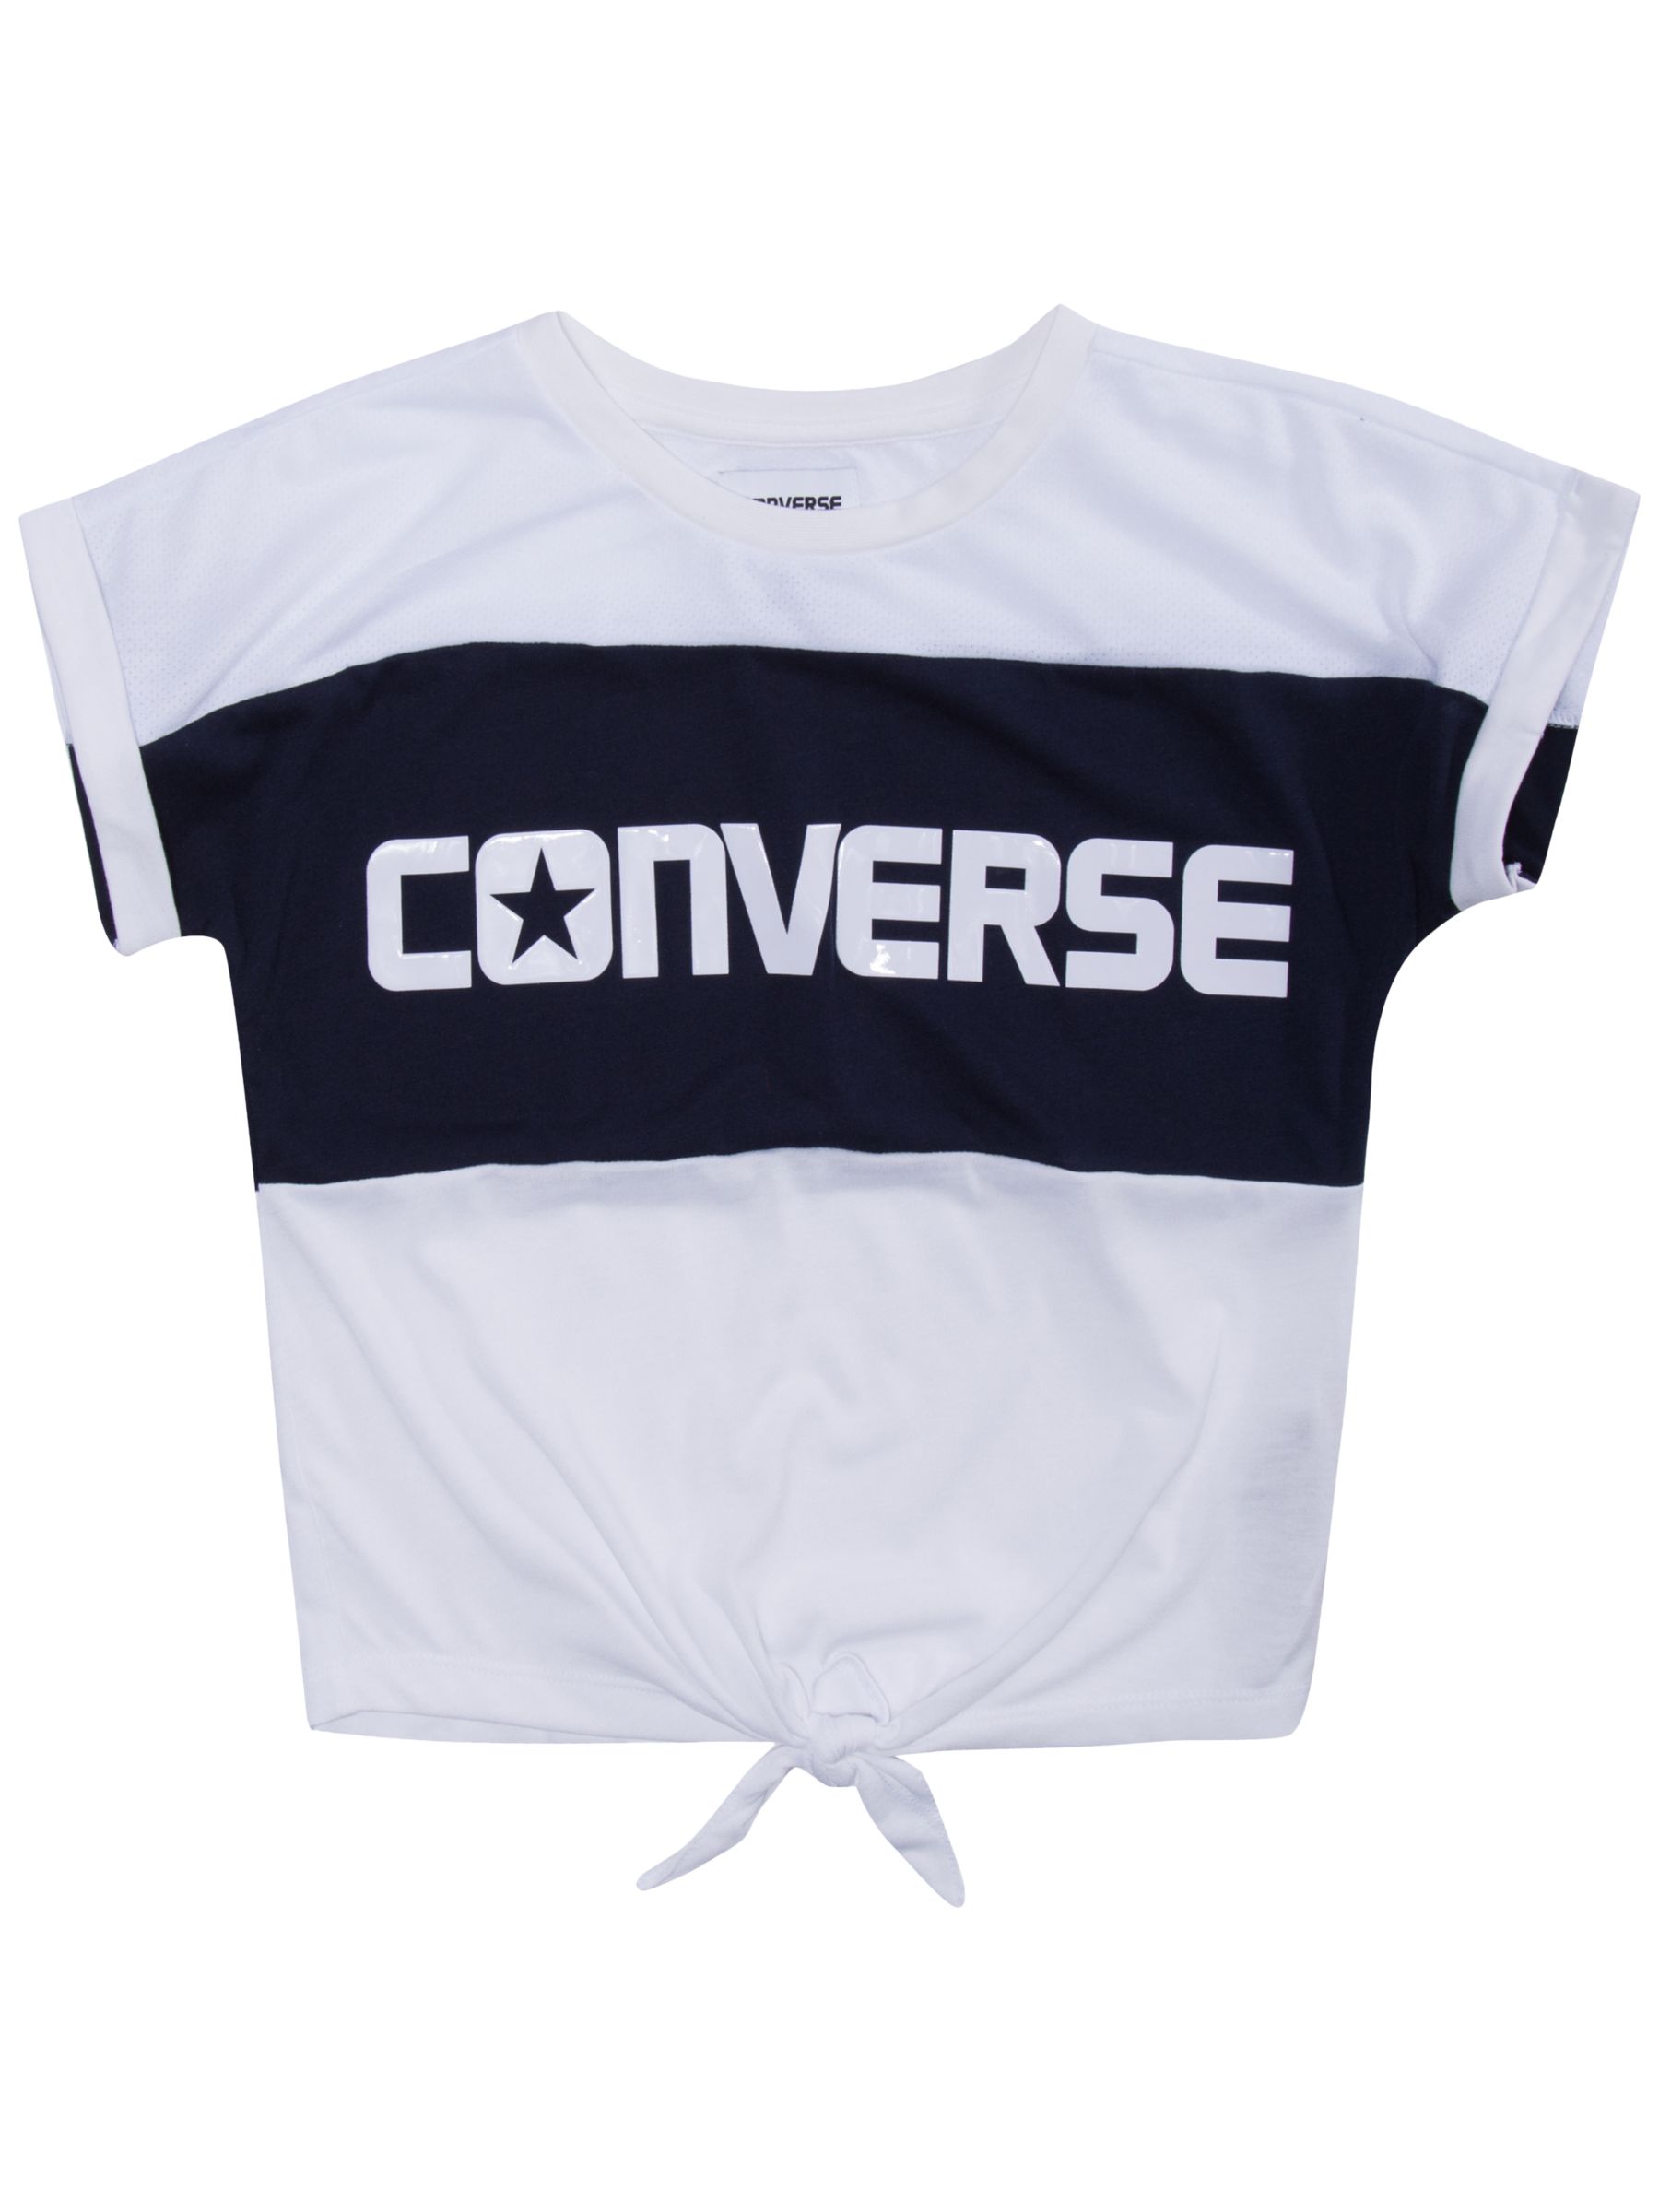 white converse t shirt womens 